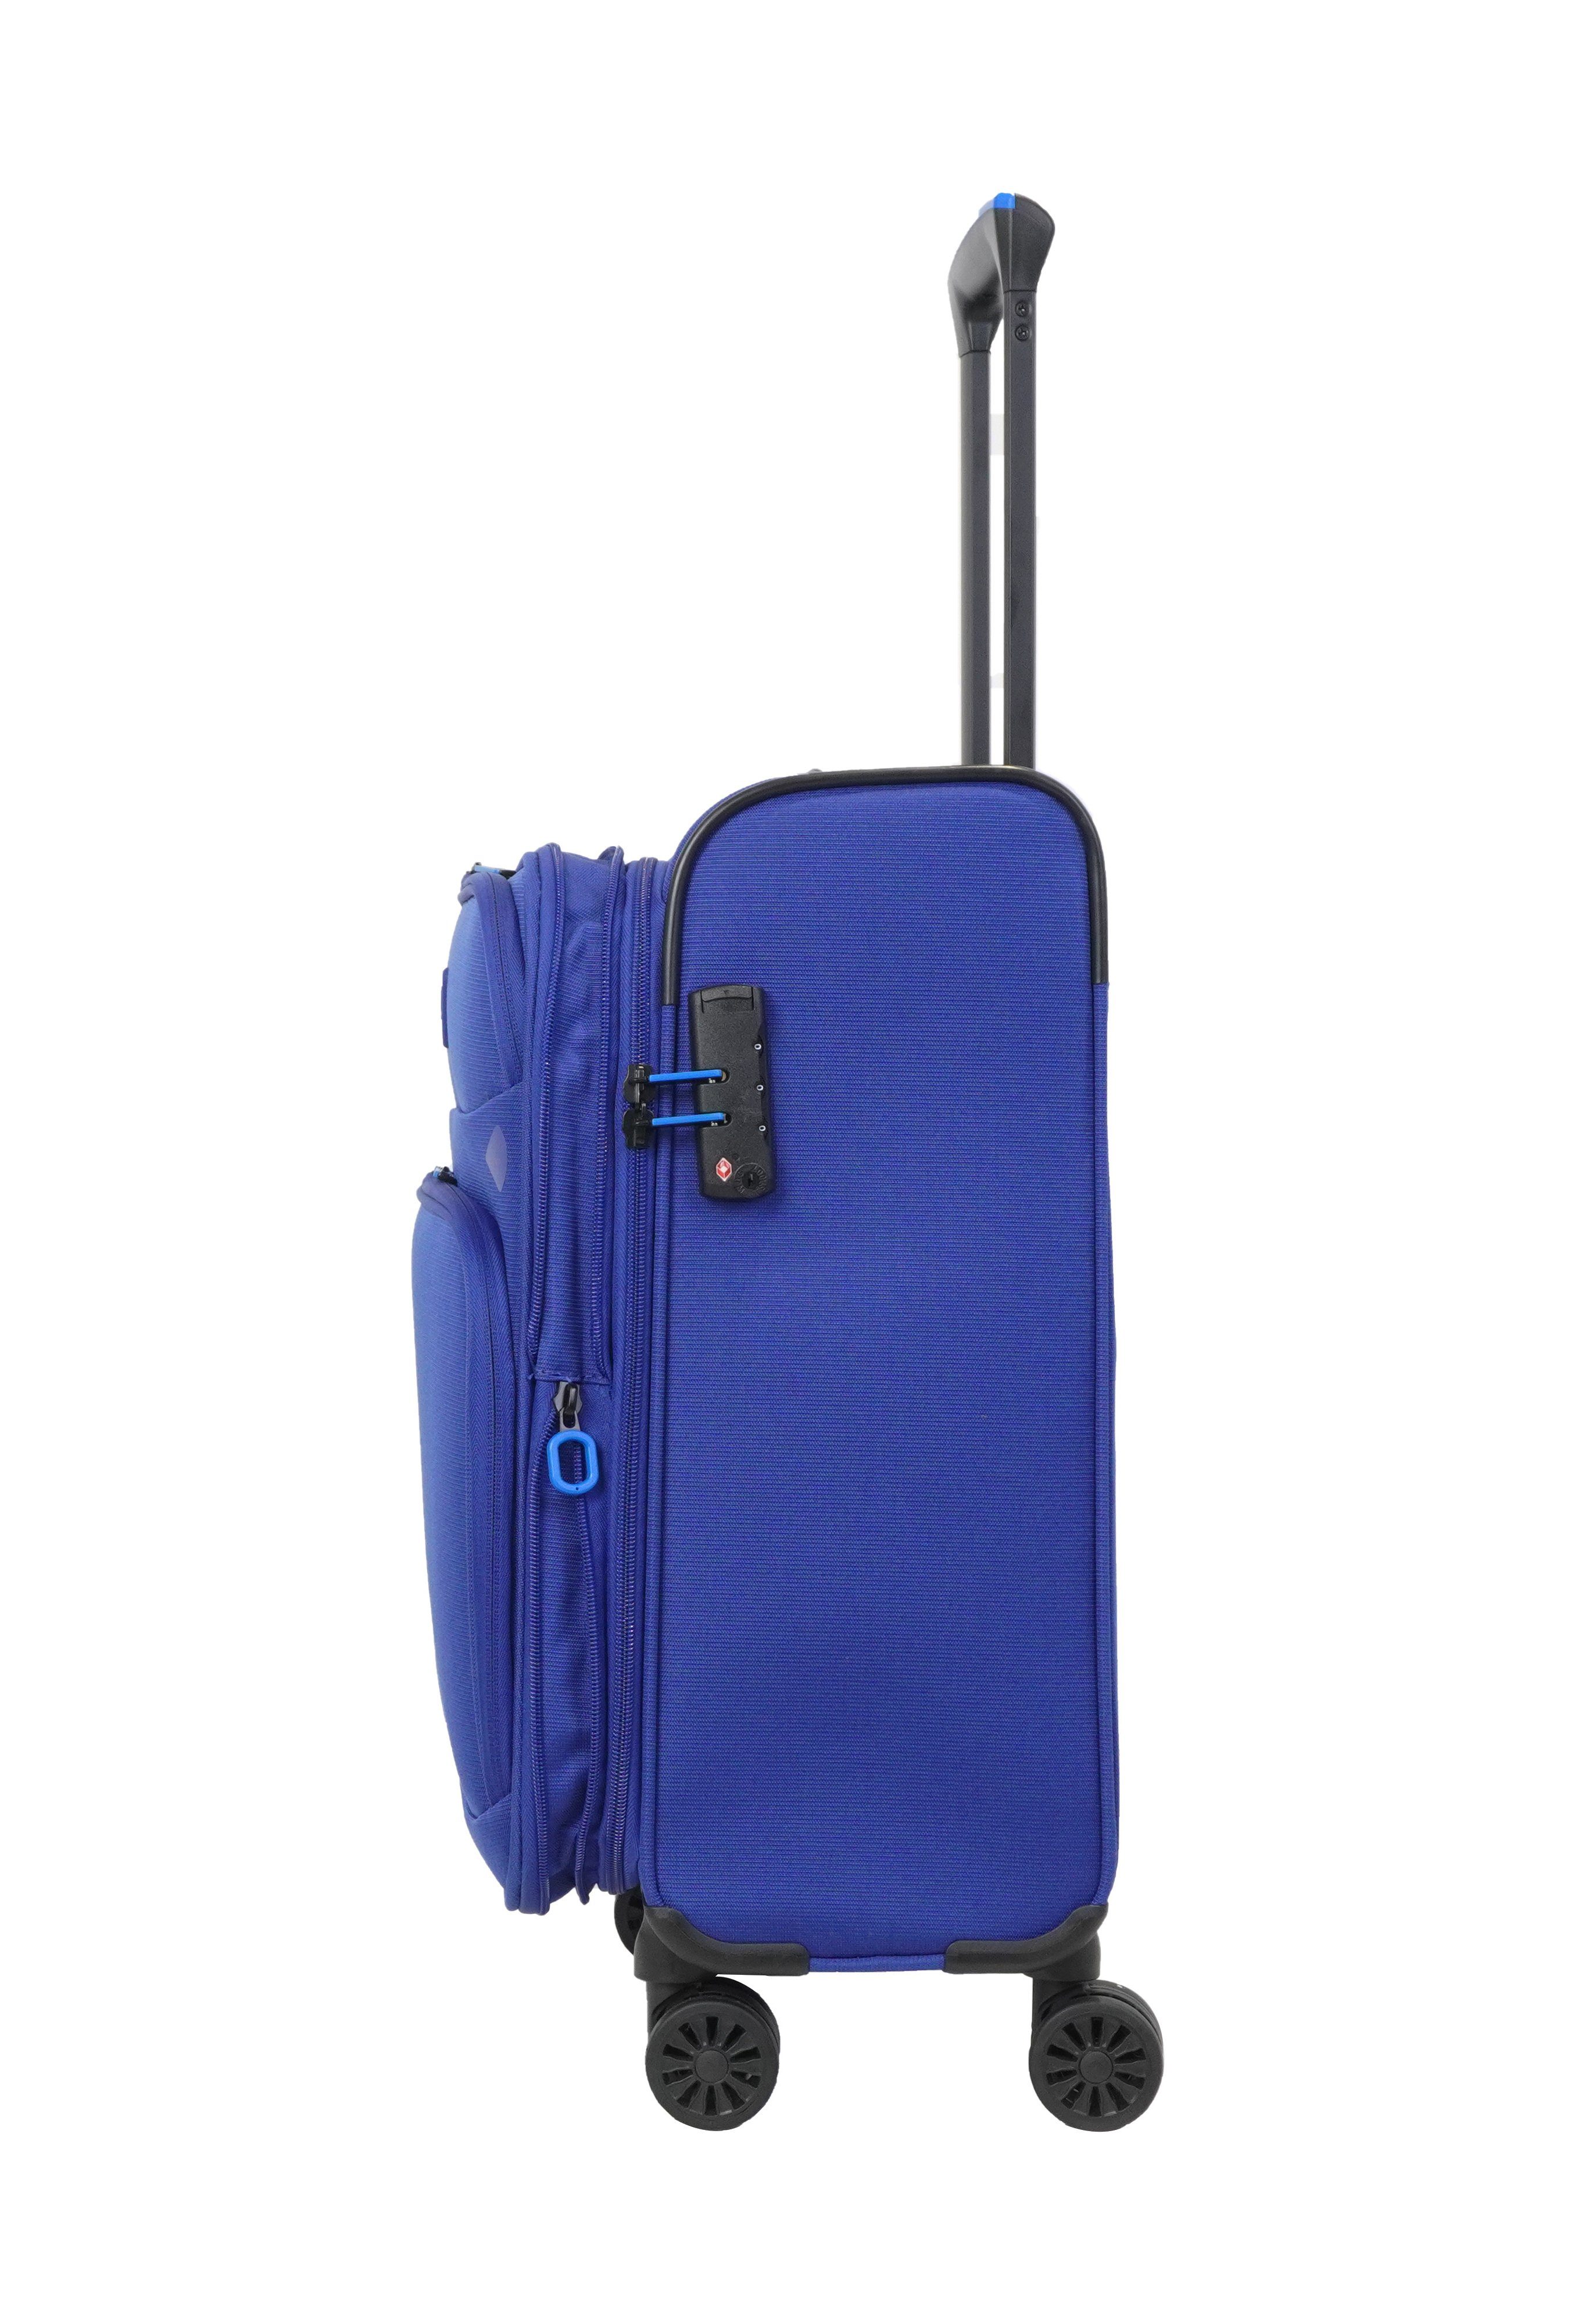 Weichgepäck-Trolley 4 Rollen, TSA-Zahlenschloss, Reisekoffer, erweiterbar, Blau-Violet Breeze, Verage schwarz